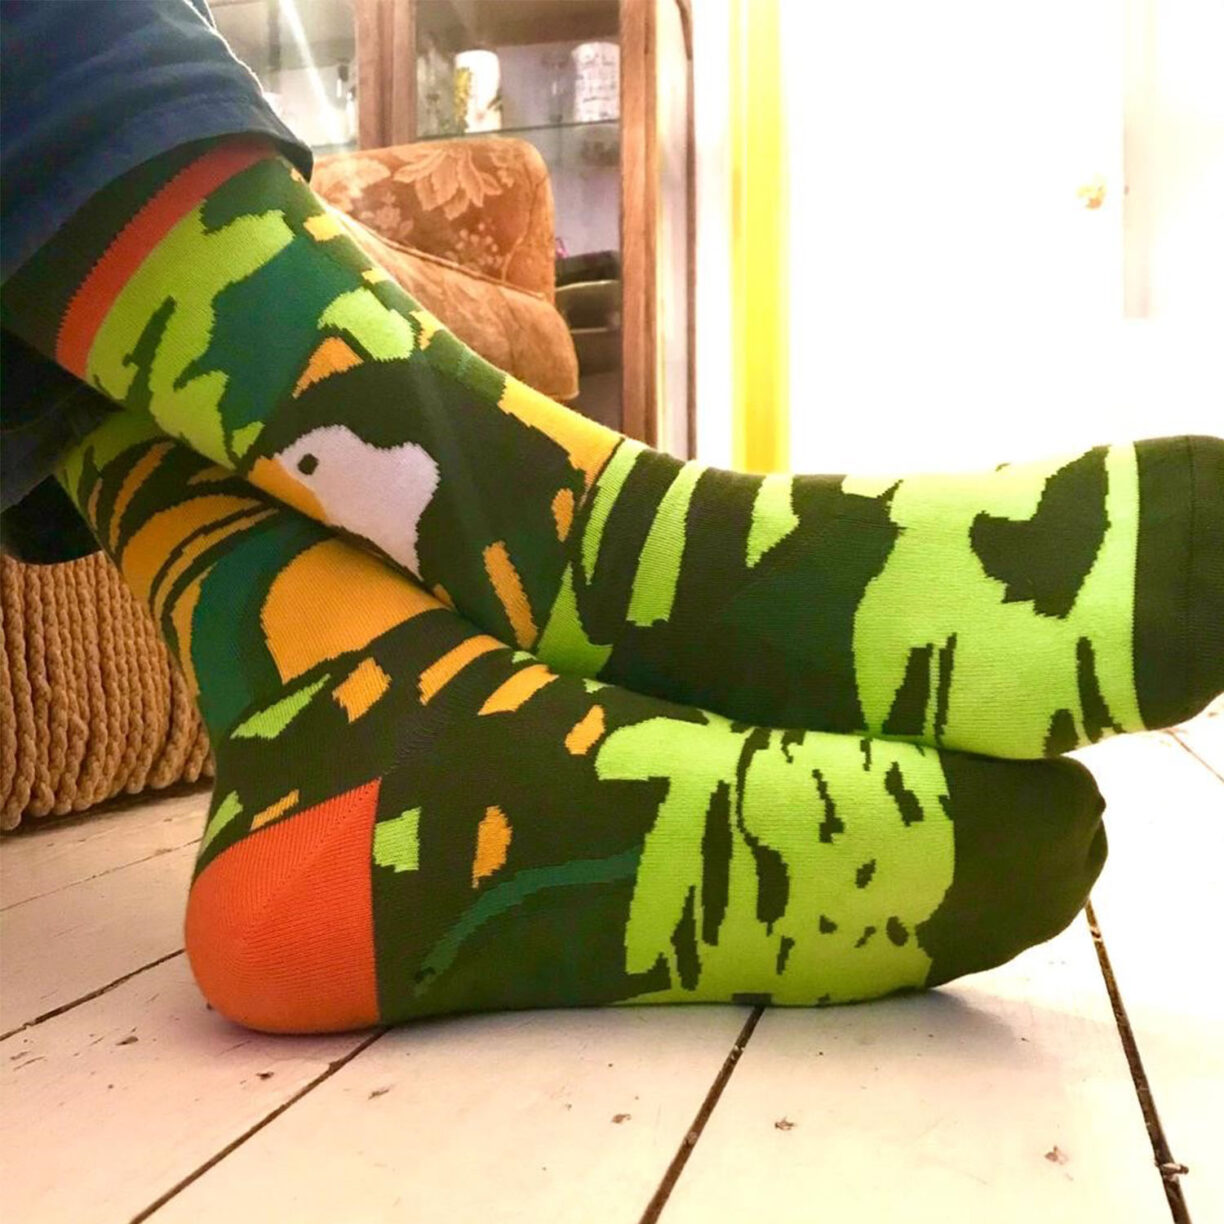 socks on mans feet